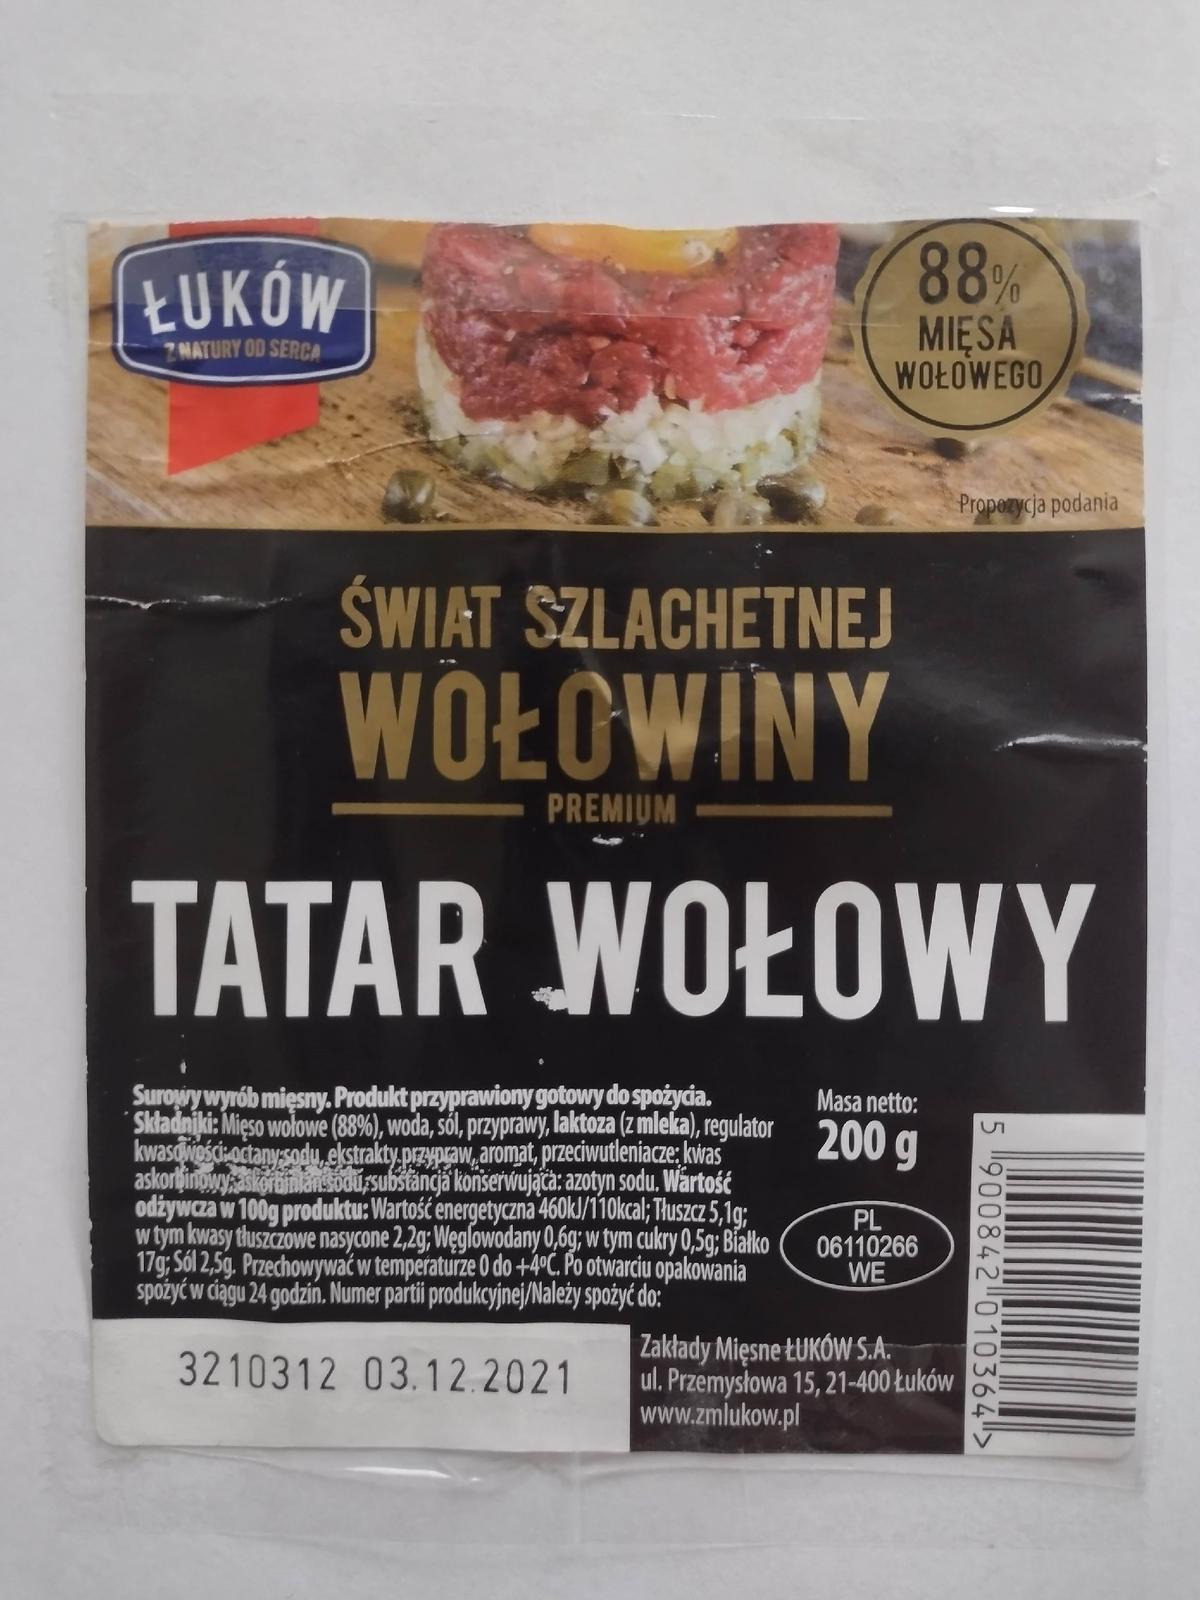 GIS wycofuje tatar wołowy znanej marki. Jest skażony salmonellą